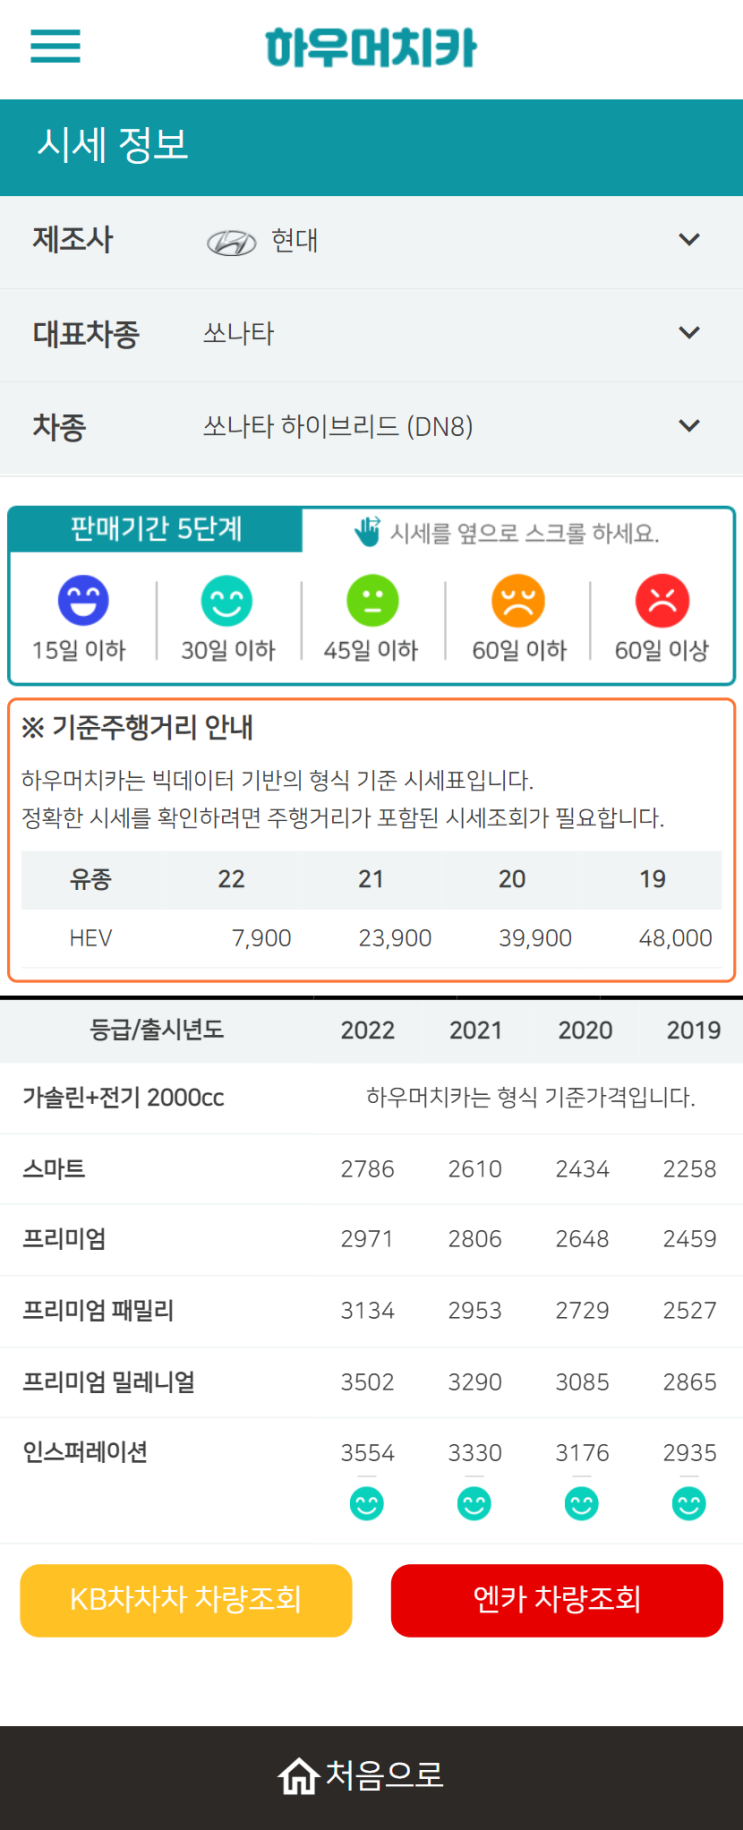 하우머치카 2022년 8월 쏘나타 하이브리드 (DN8) 중고차시세.가격표